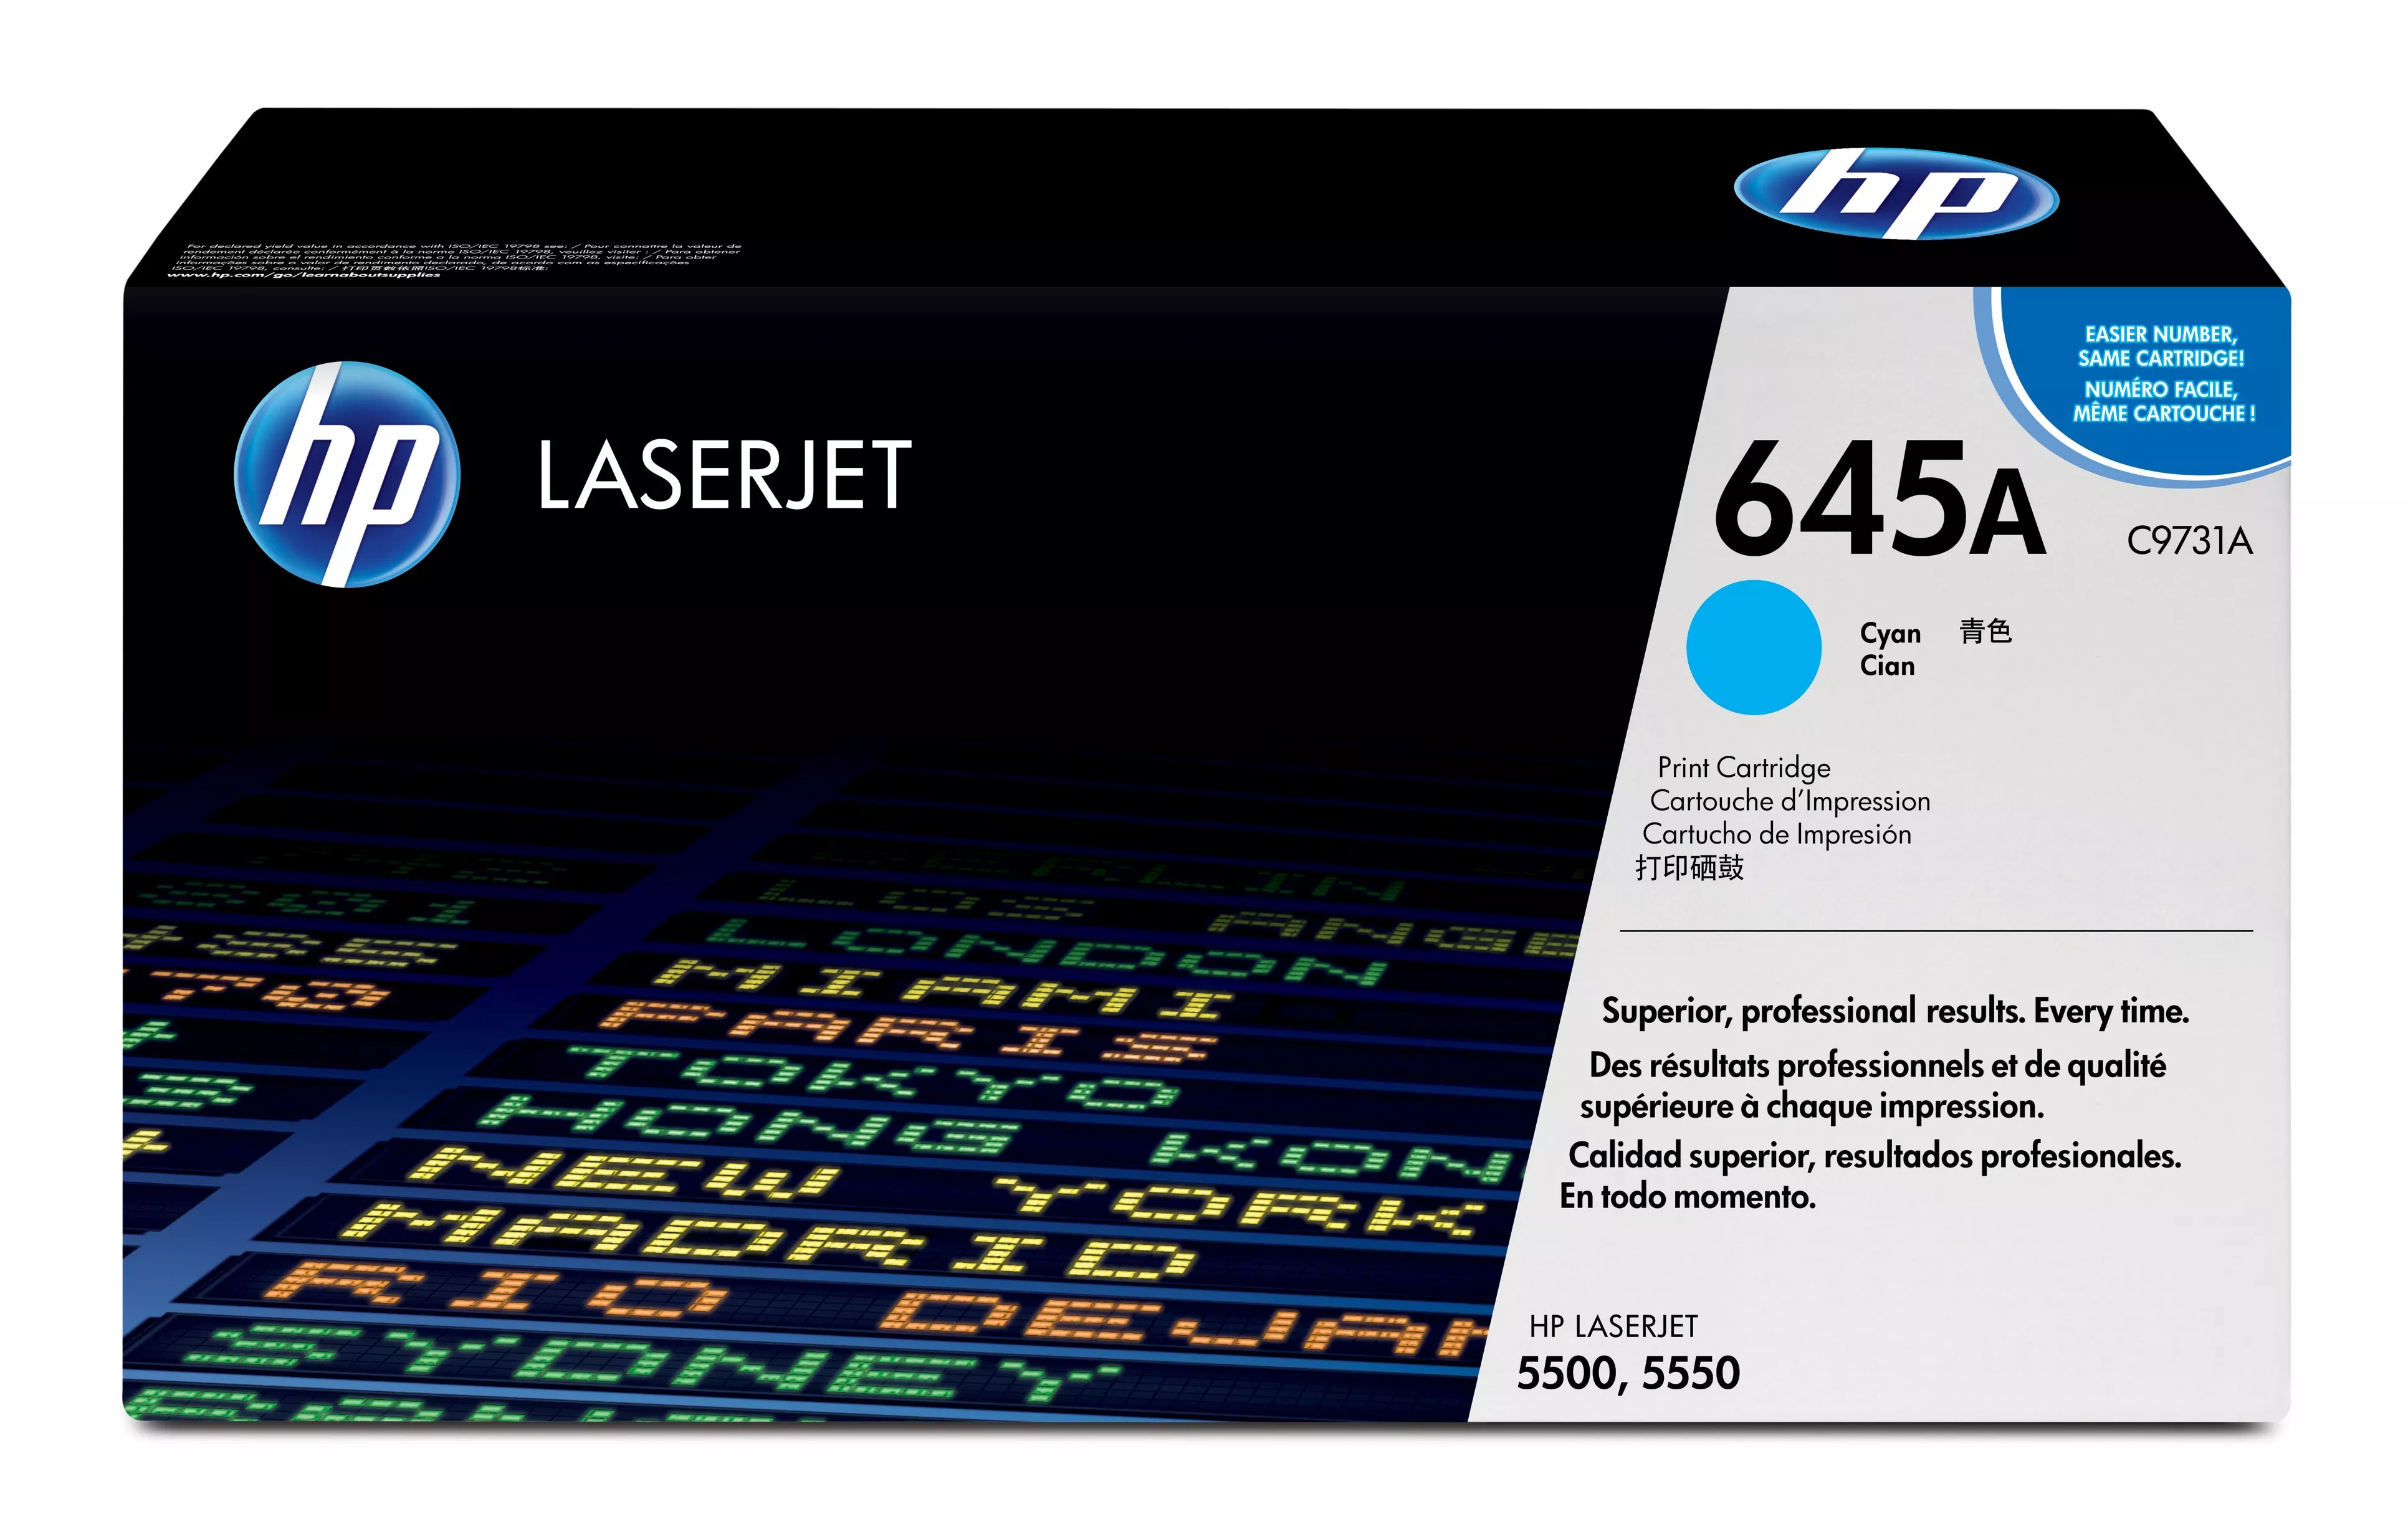 Achat HP 645A original Colour LaserJet Toner cartridge C9731A au meilleur prix